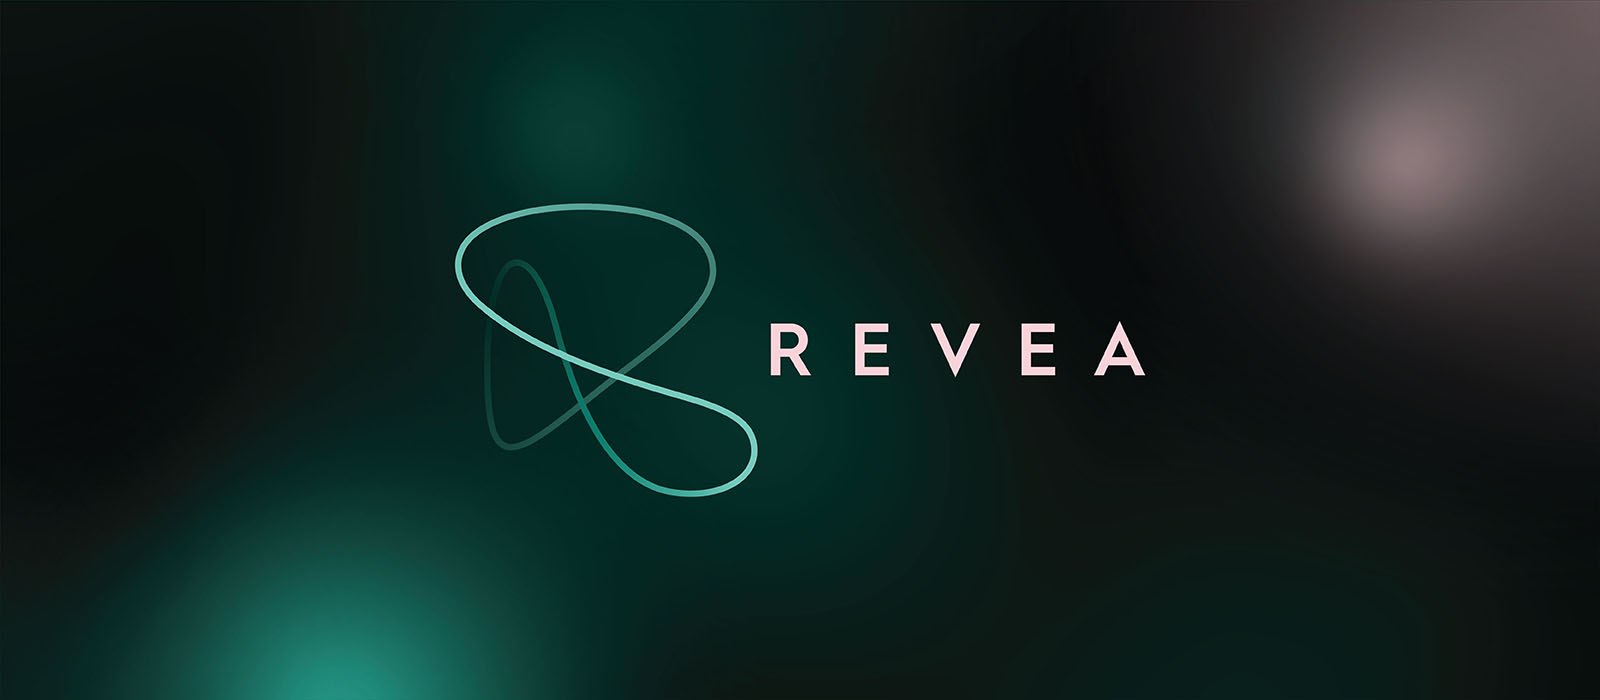 Revea skincare logo